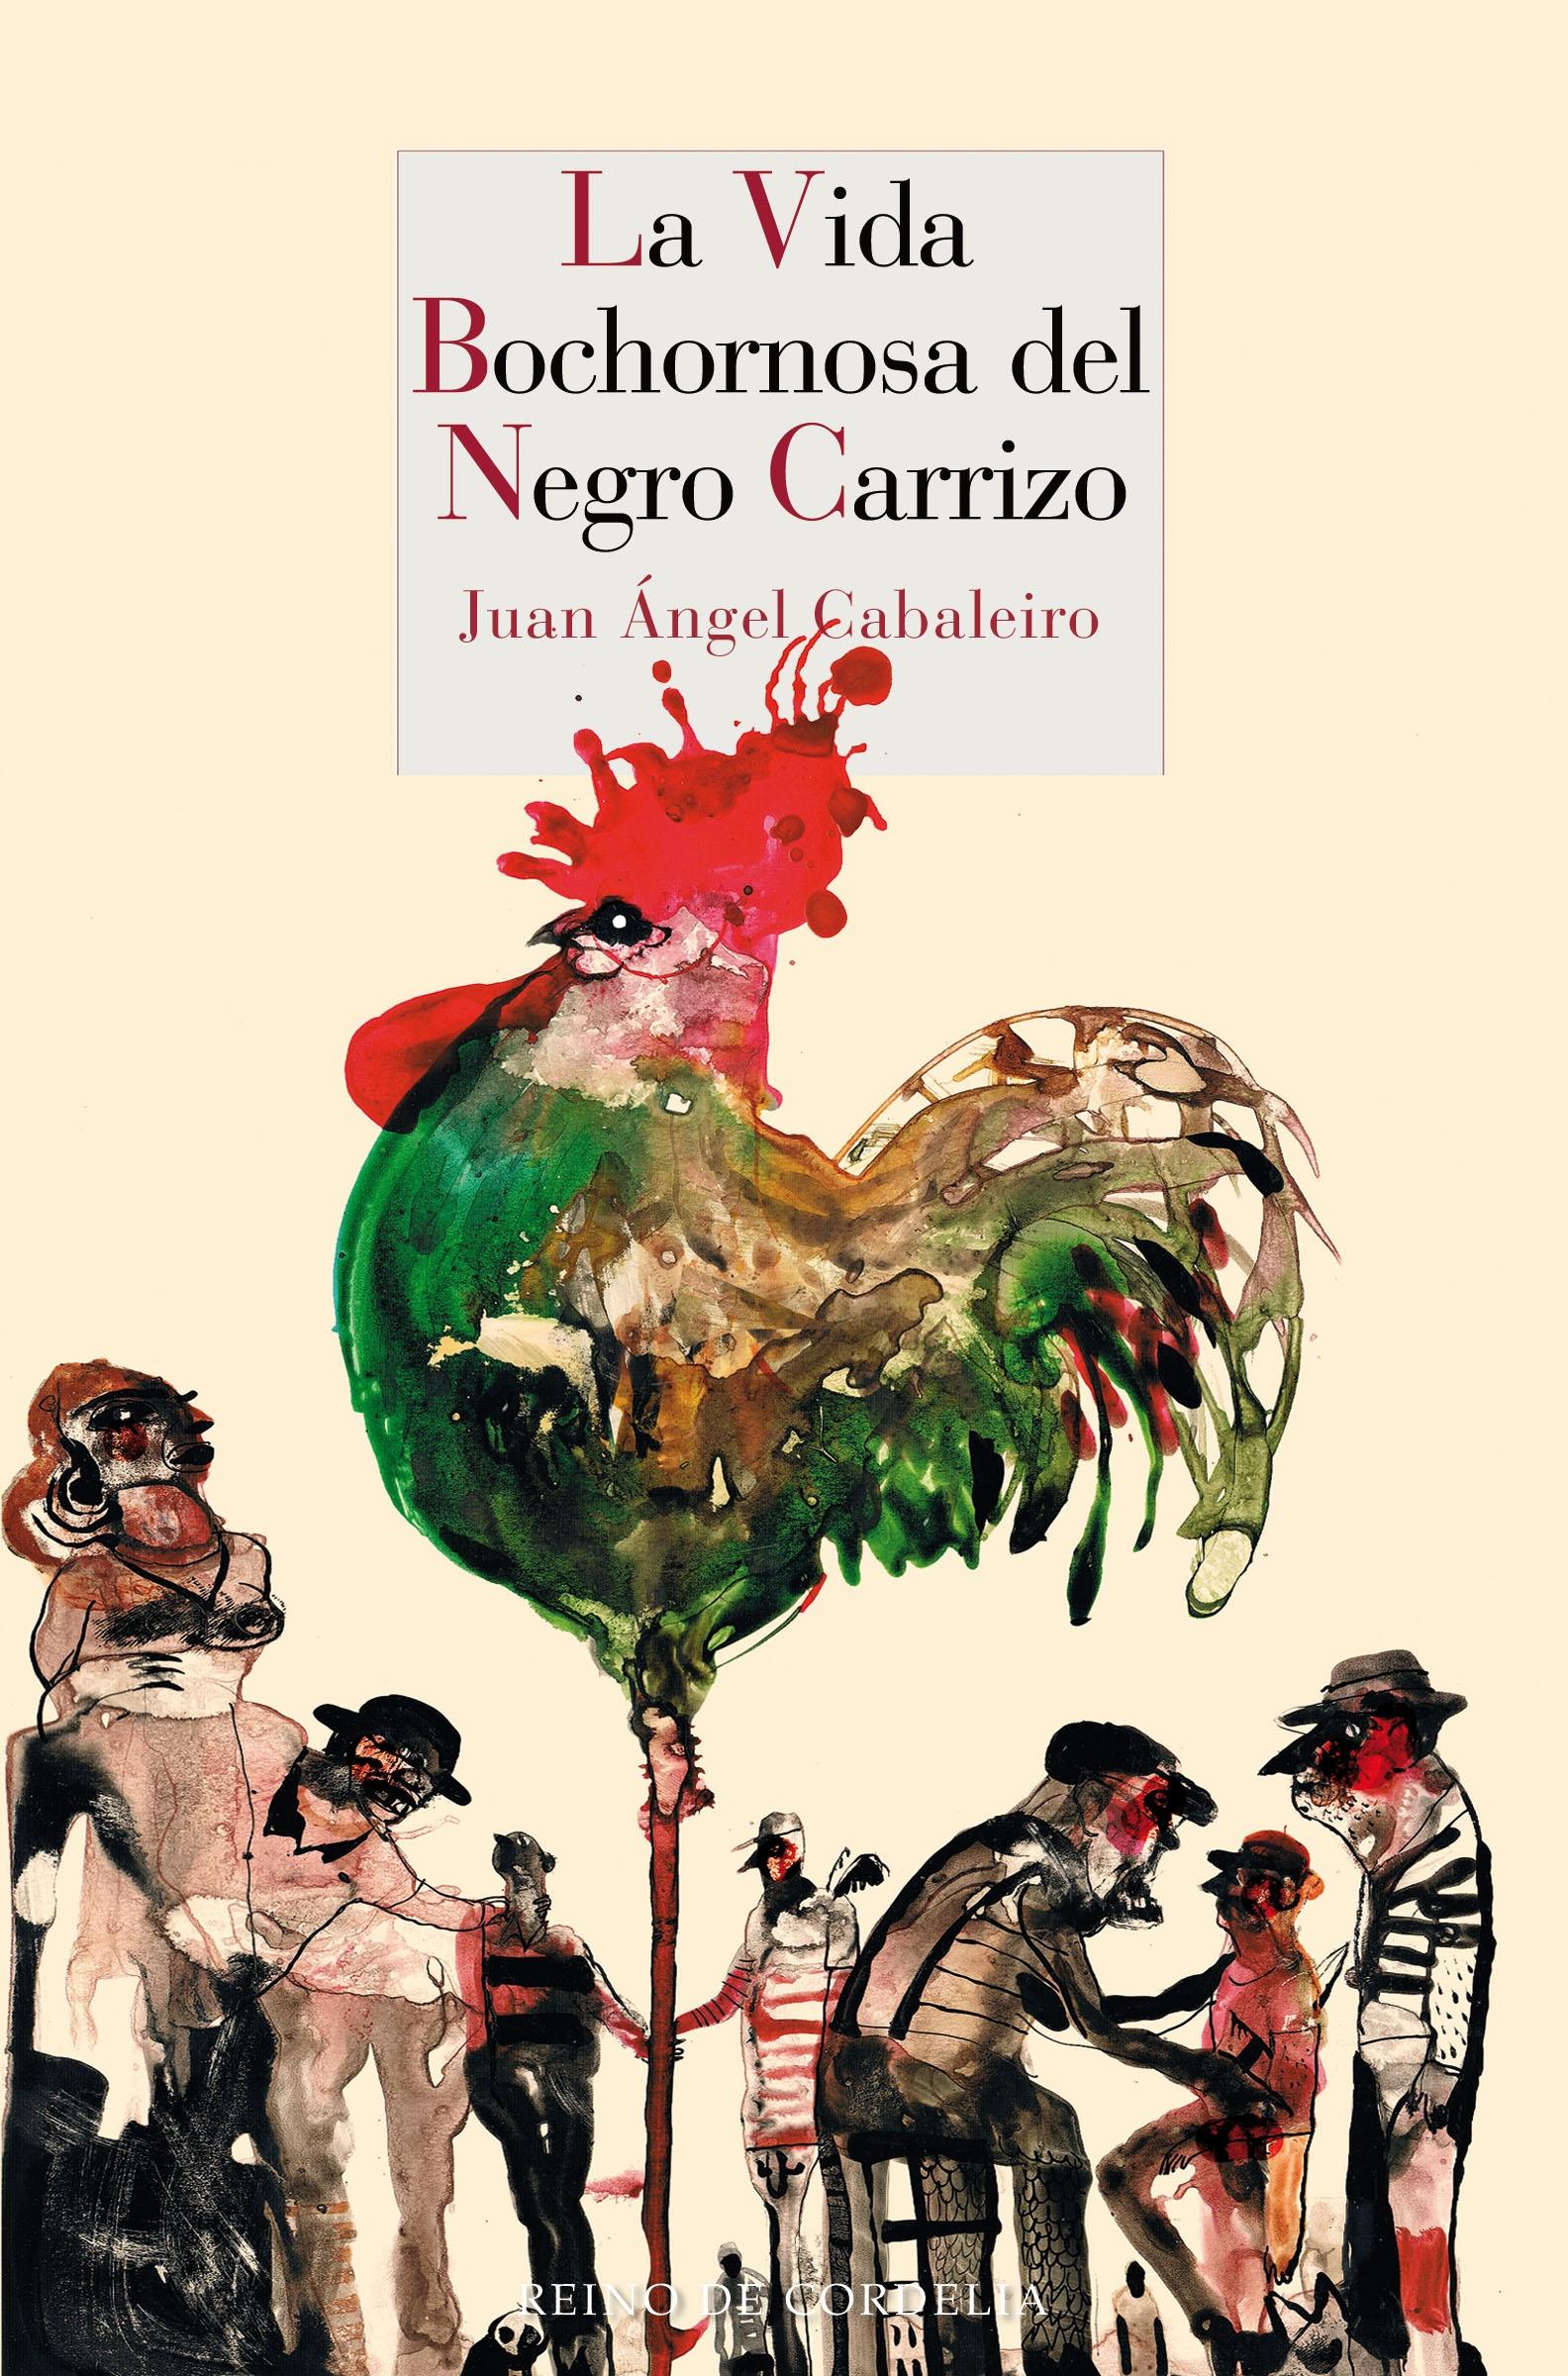 La Vida Bochornosa del Negro Carrizo "Premio Internacional de Novela Corta  Giralda  2015"